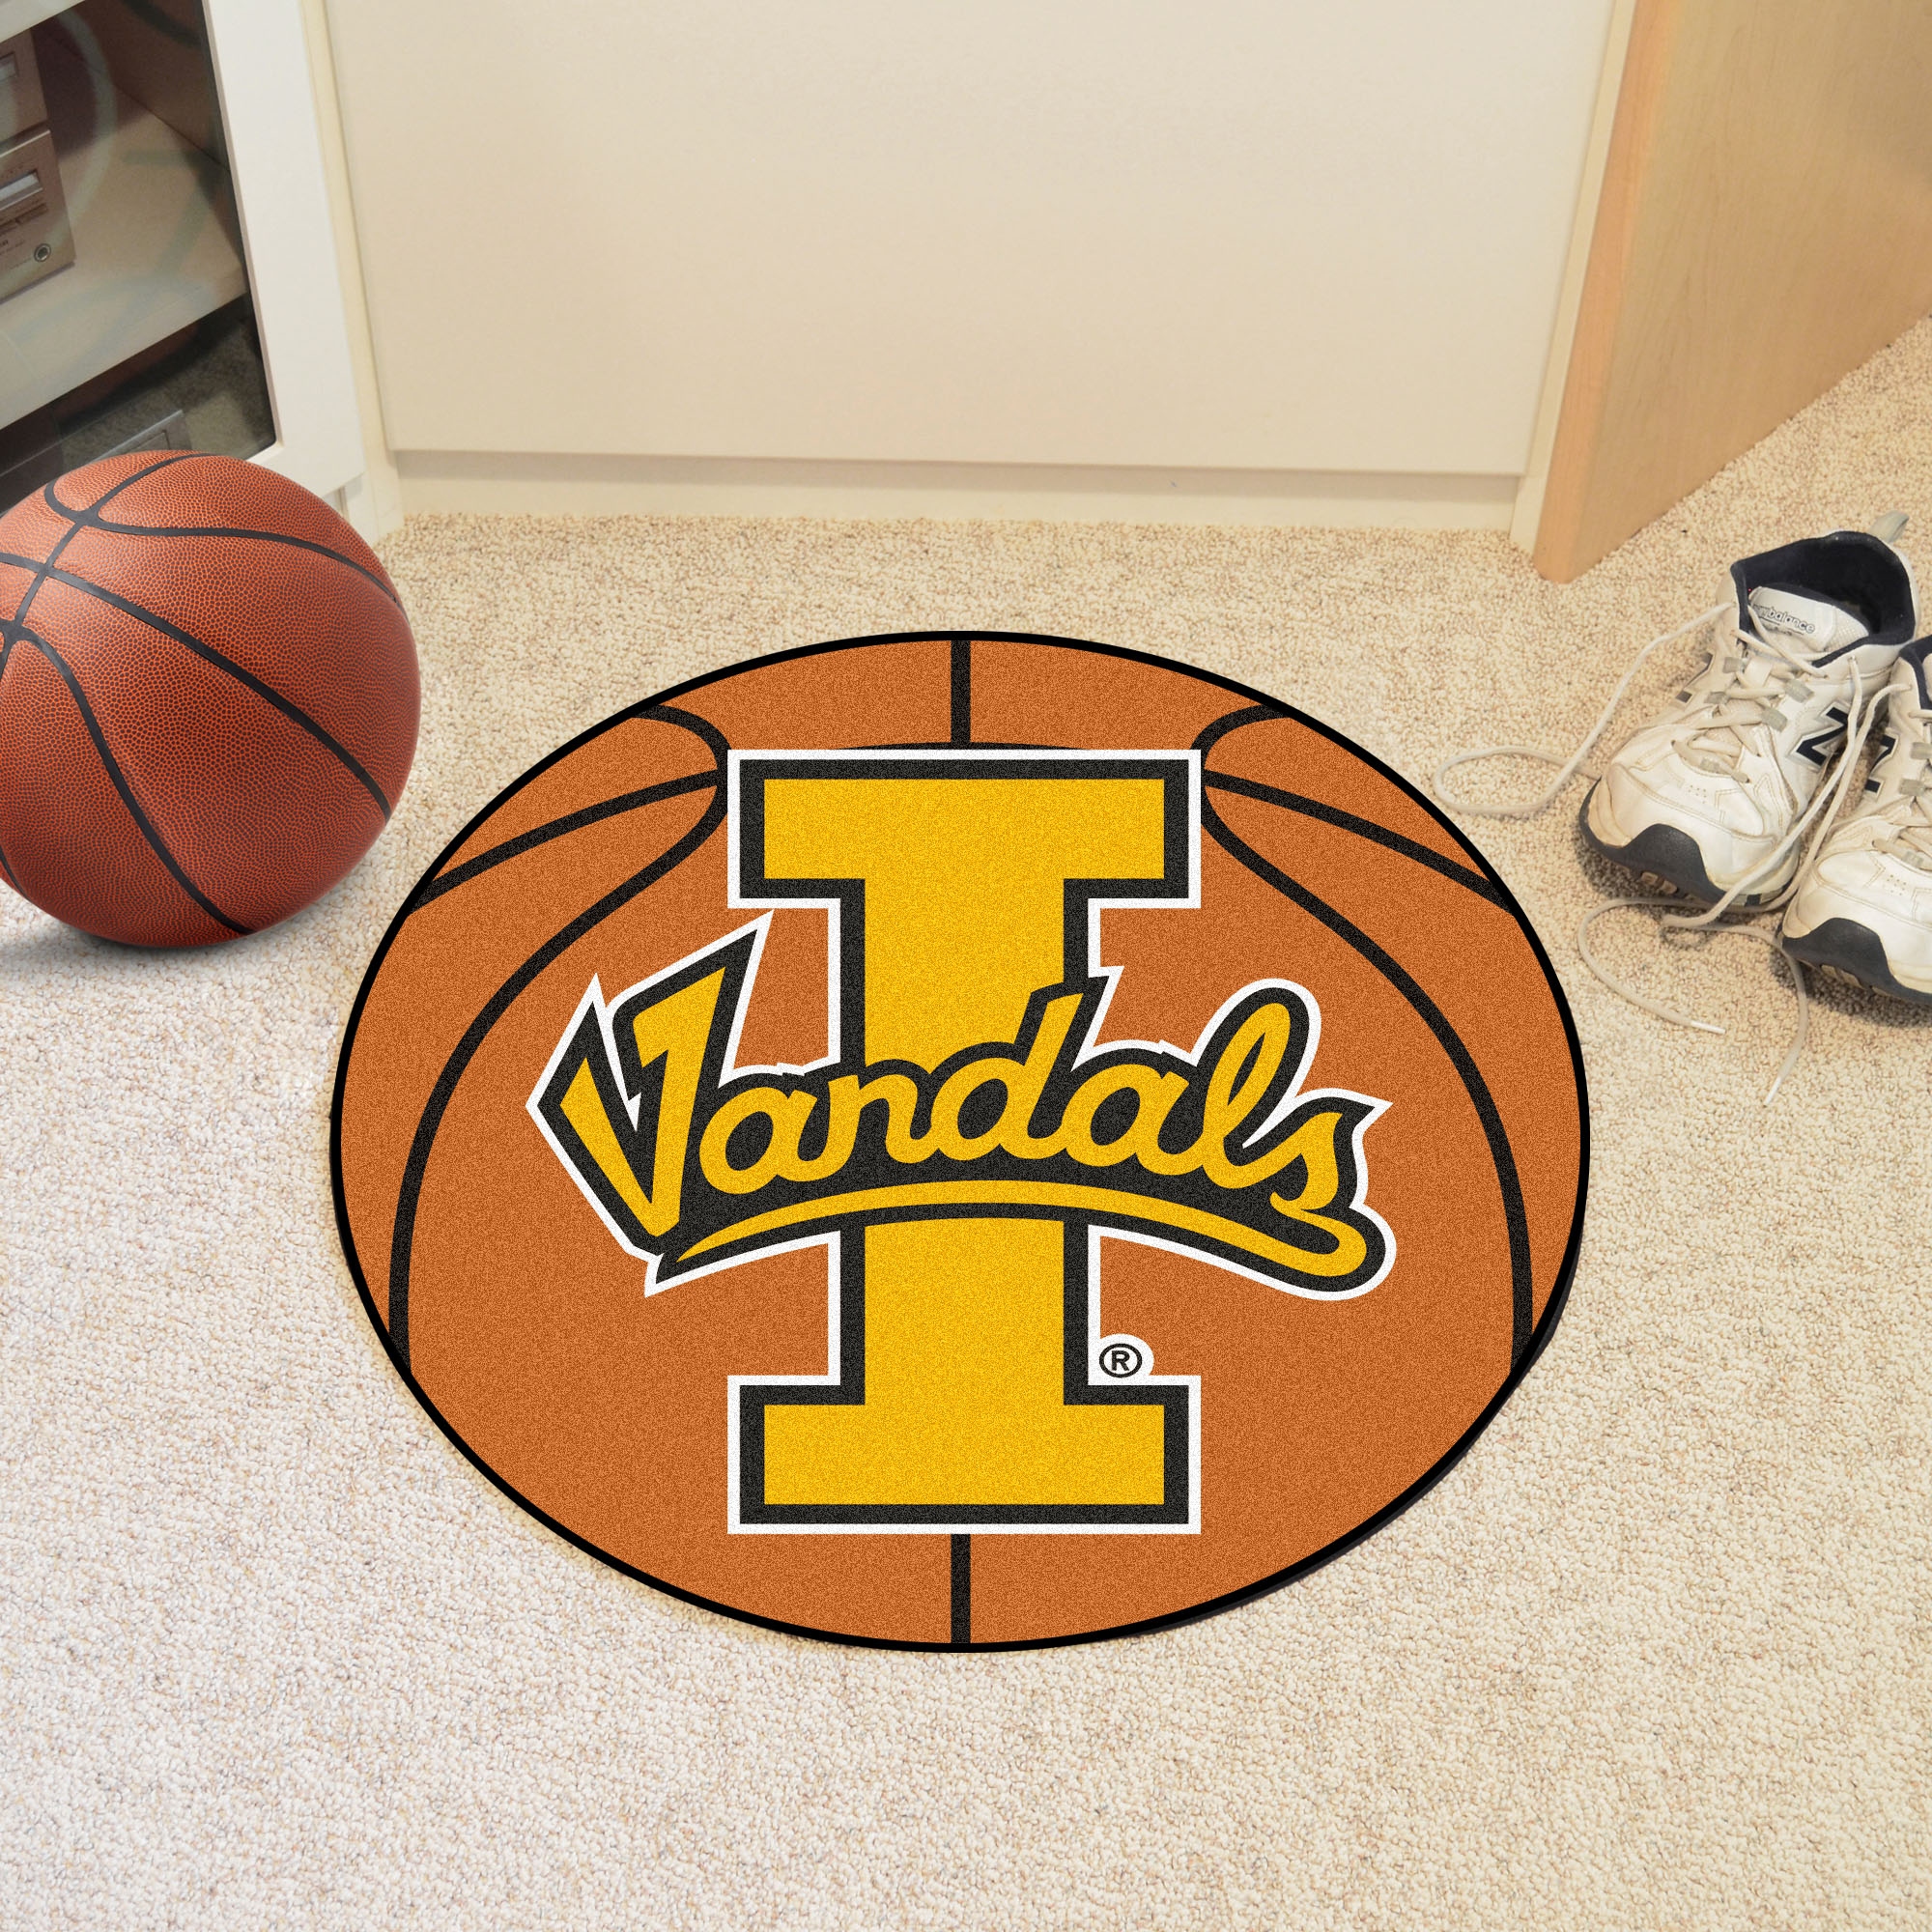 University of Idaho Ball Shaped Area Rugs (Ball Shaped Area Rugs: Basketball)